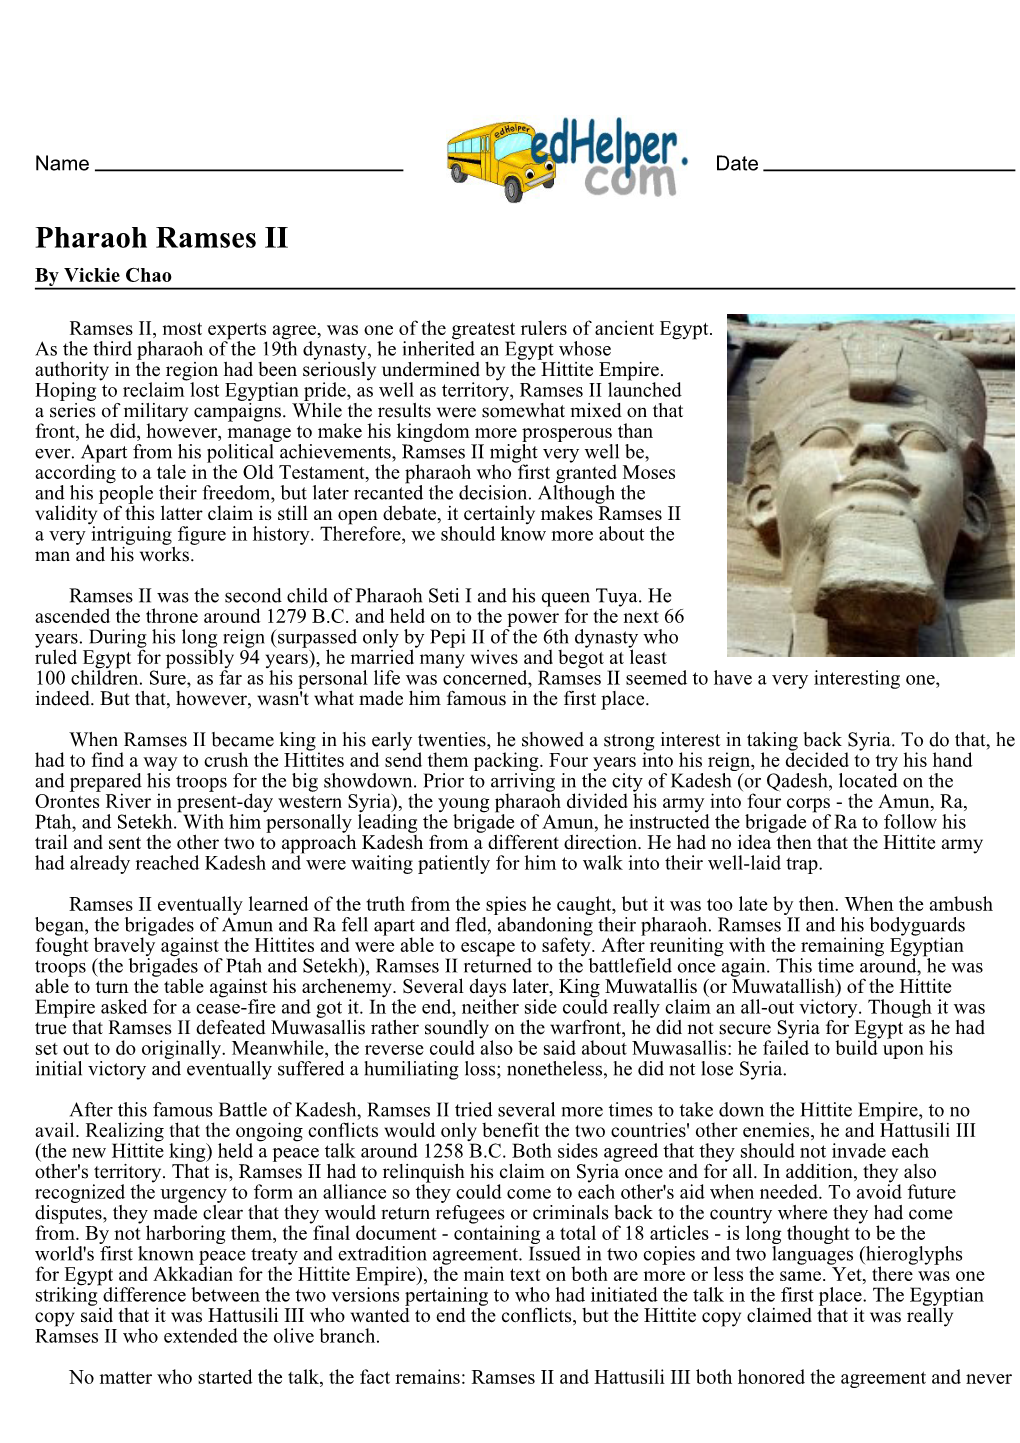 Pharaoh Ramses II by Vickie Chao